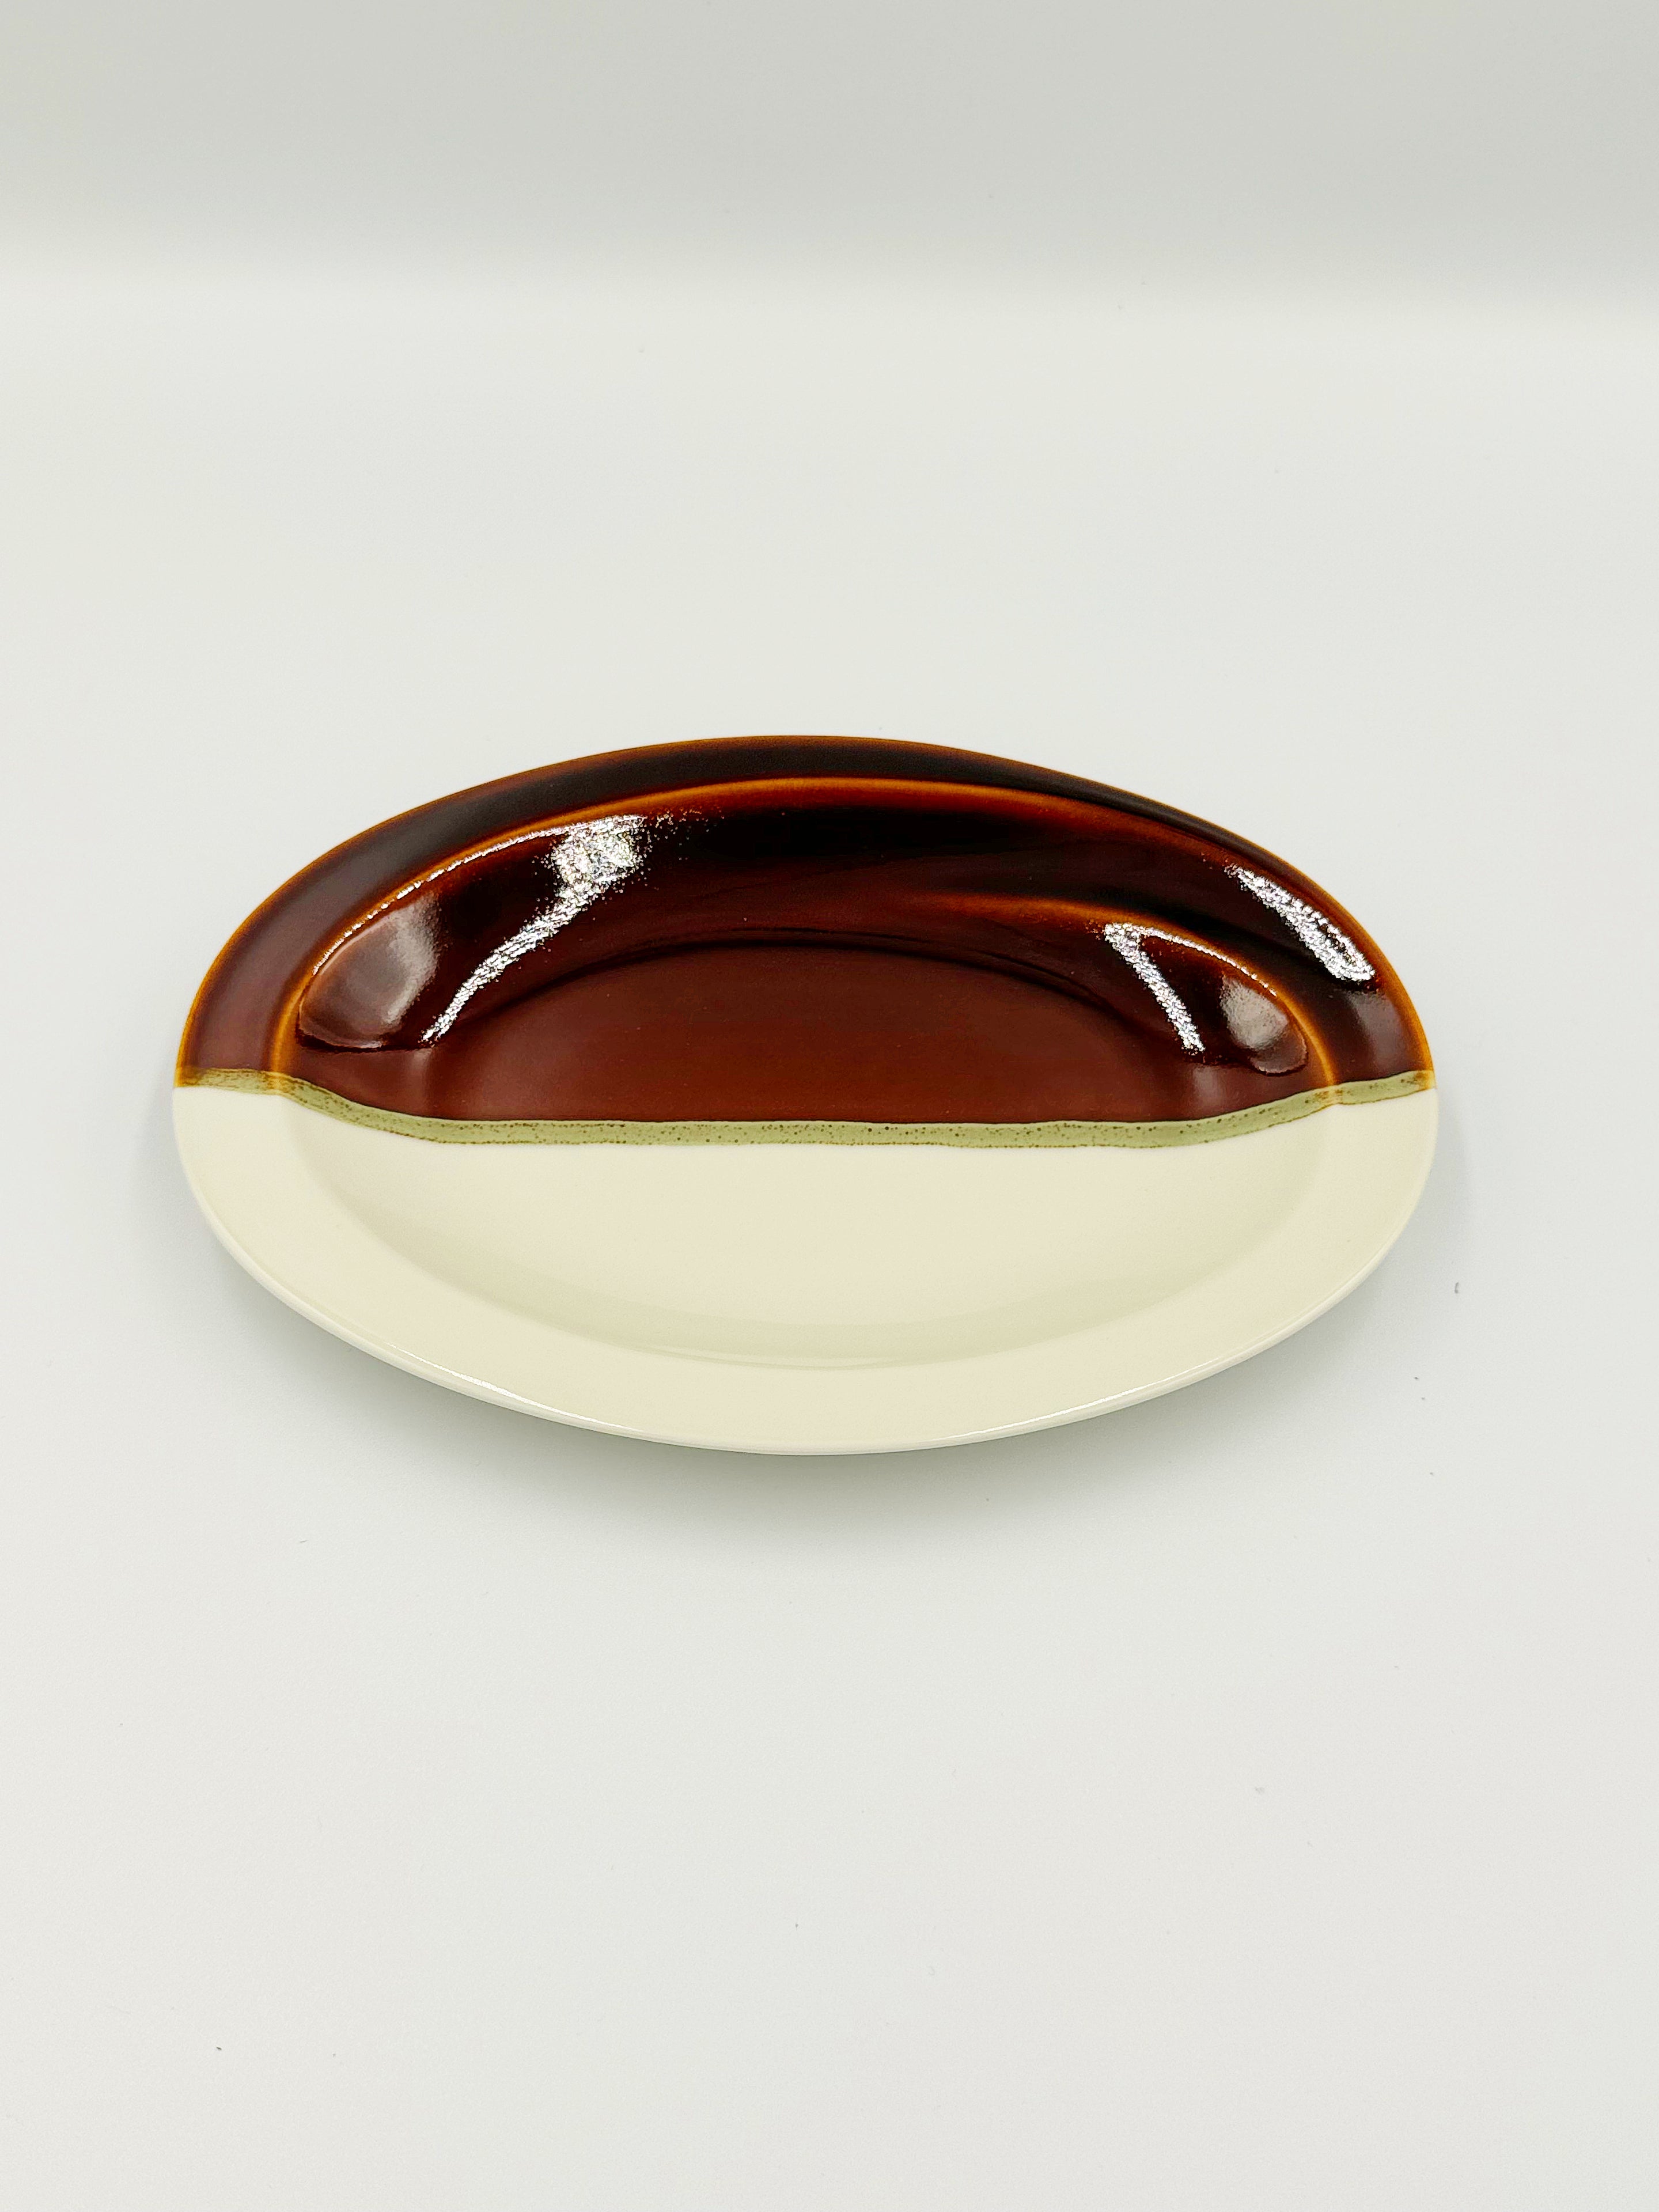 White & Amber Glazed Plate